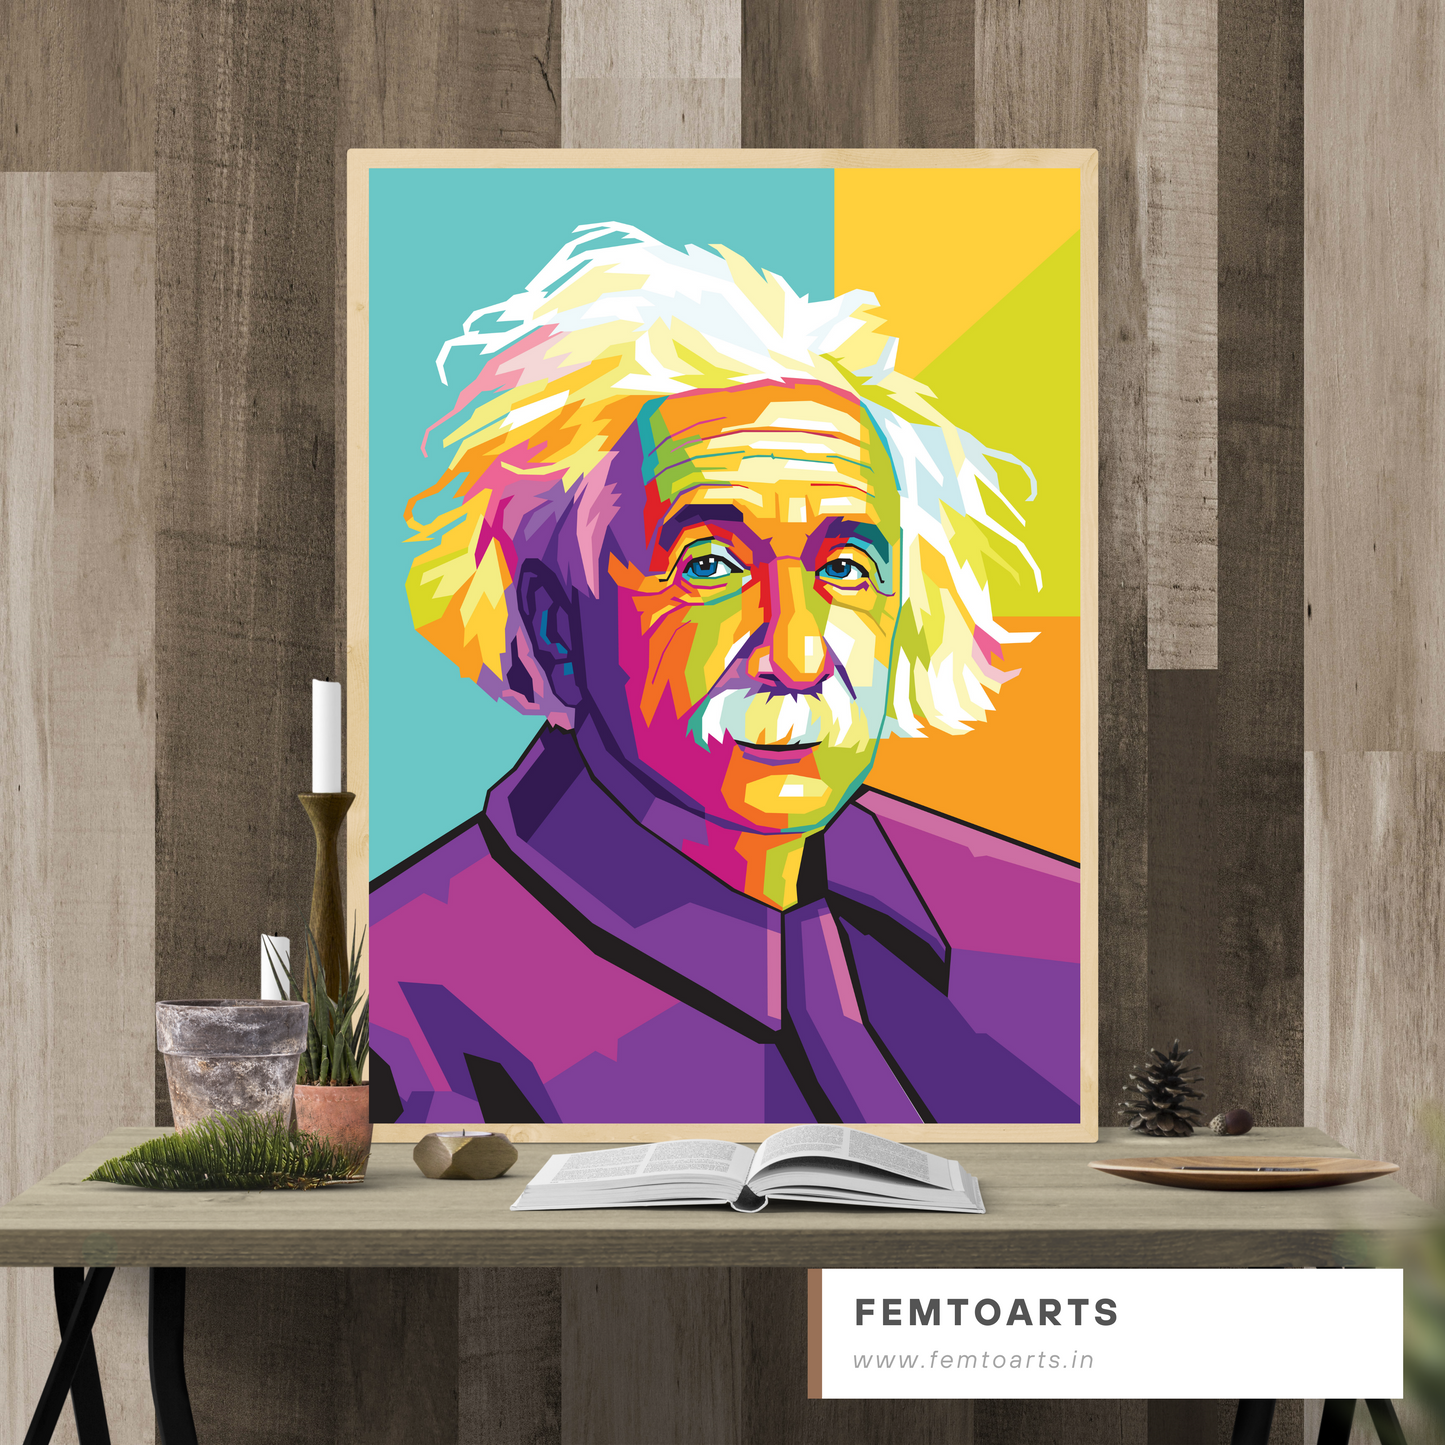 Albert Einstein Pop Art